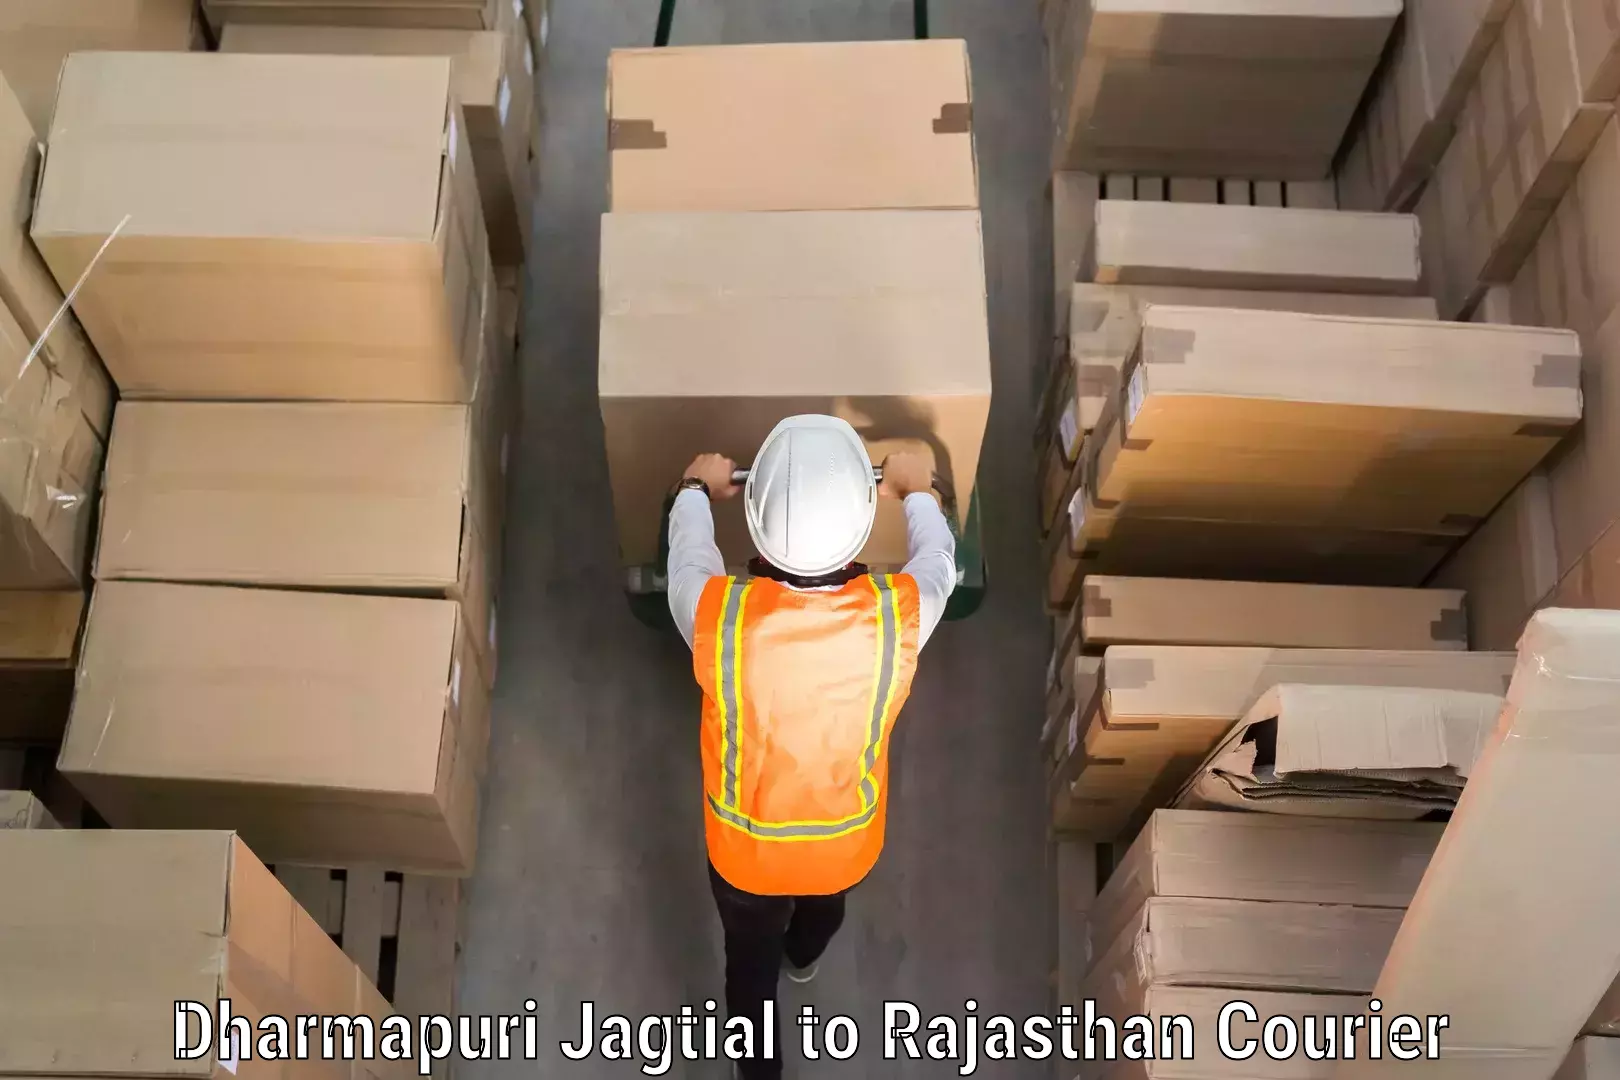 Baggage courier FAQs Dharmapuri Jagtial to Srimadhopur